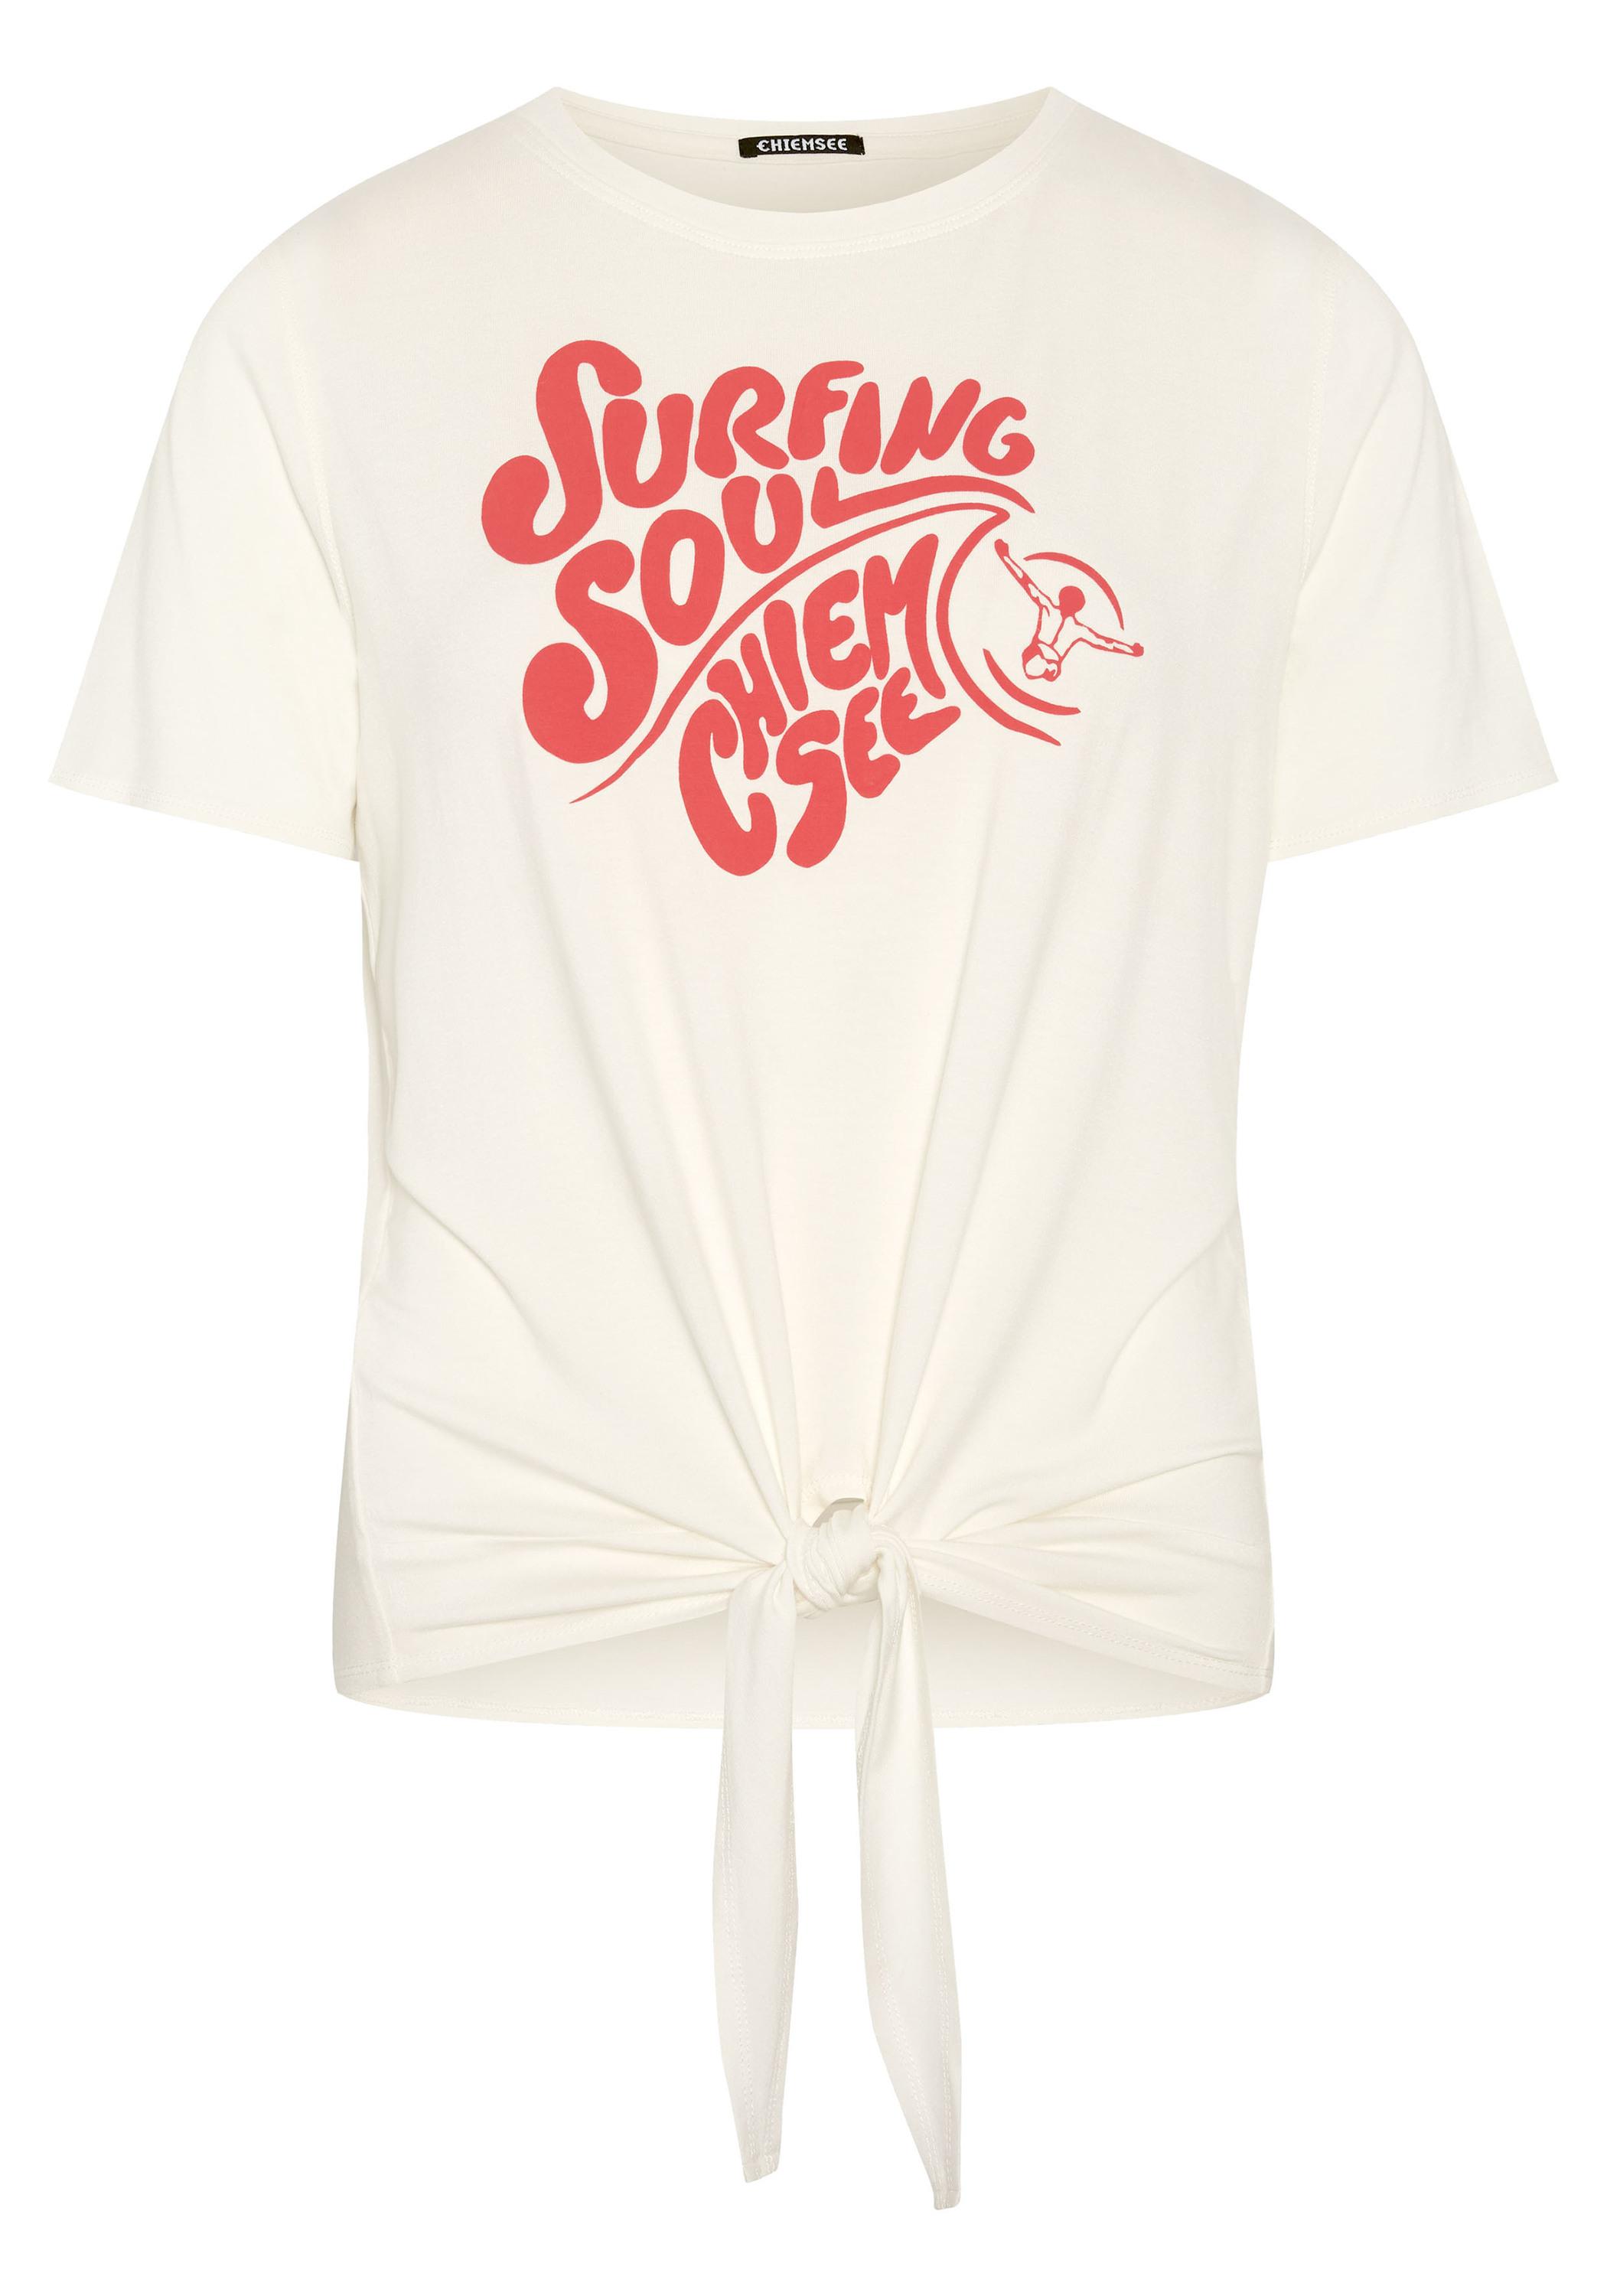 Chiemsee gecropptes T-Shirt T-Shirt kaufen Shop von SportScheck Damen White Online im 11-4202 Star